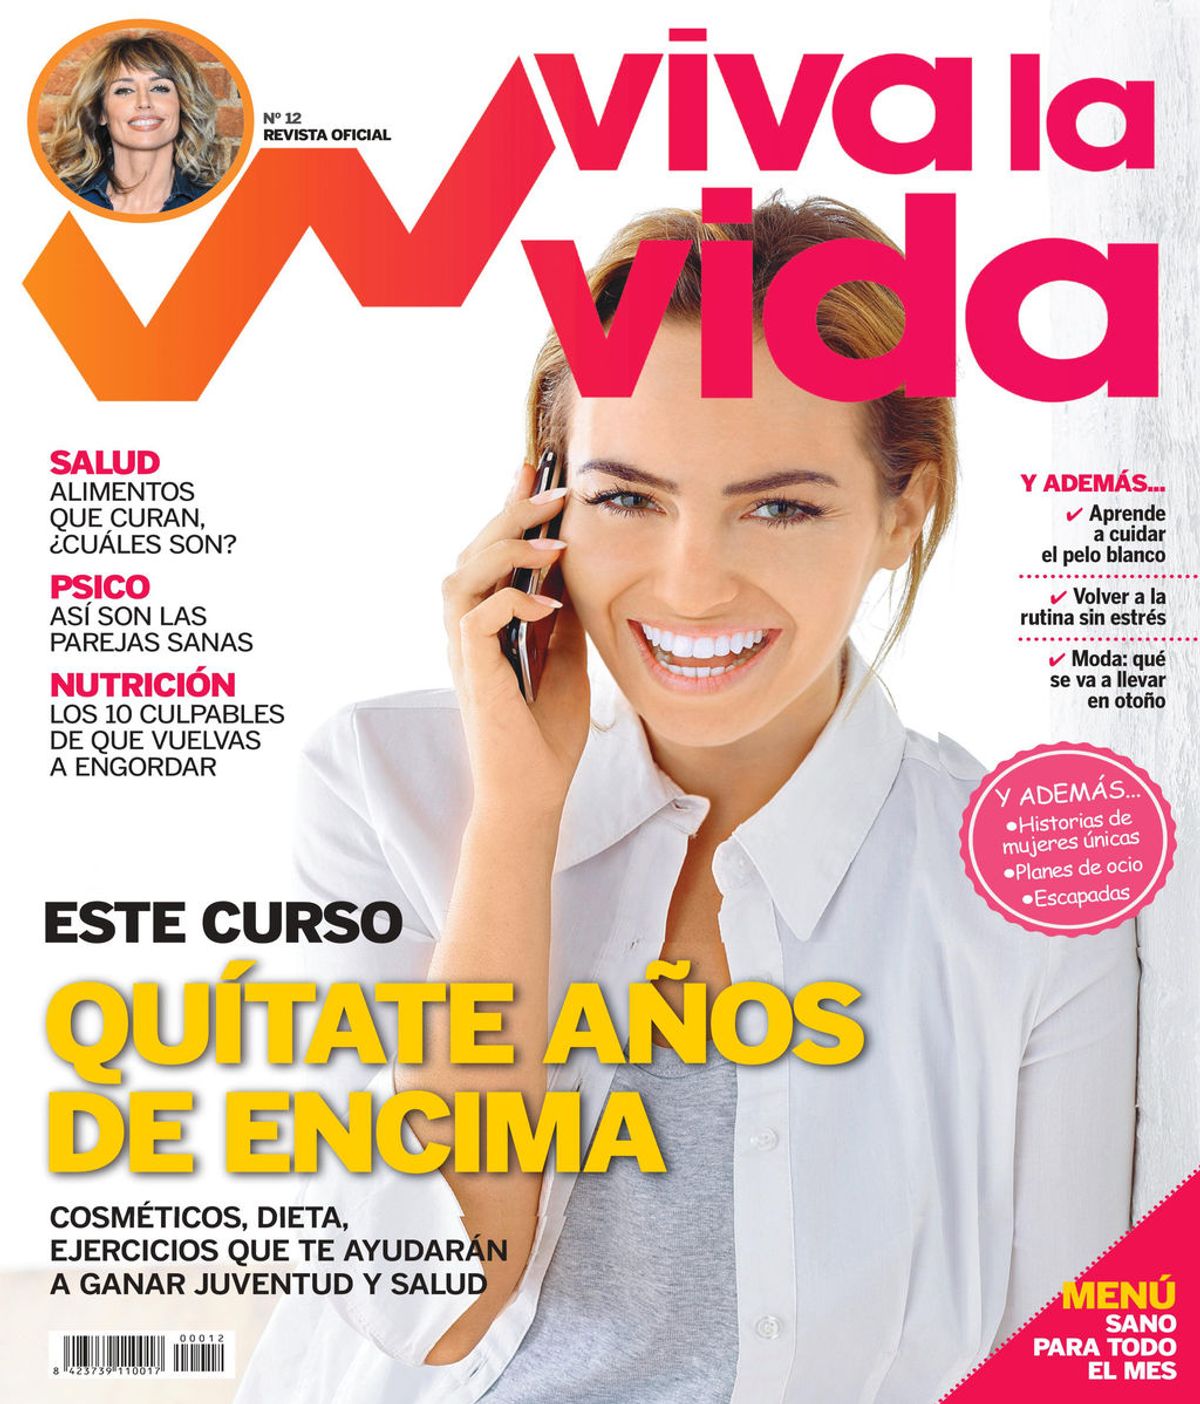 La nueva revista 'Viva la Vida' te ayuda a empezar septiembre con buen pie